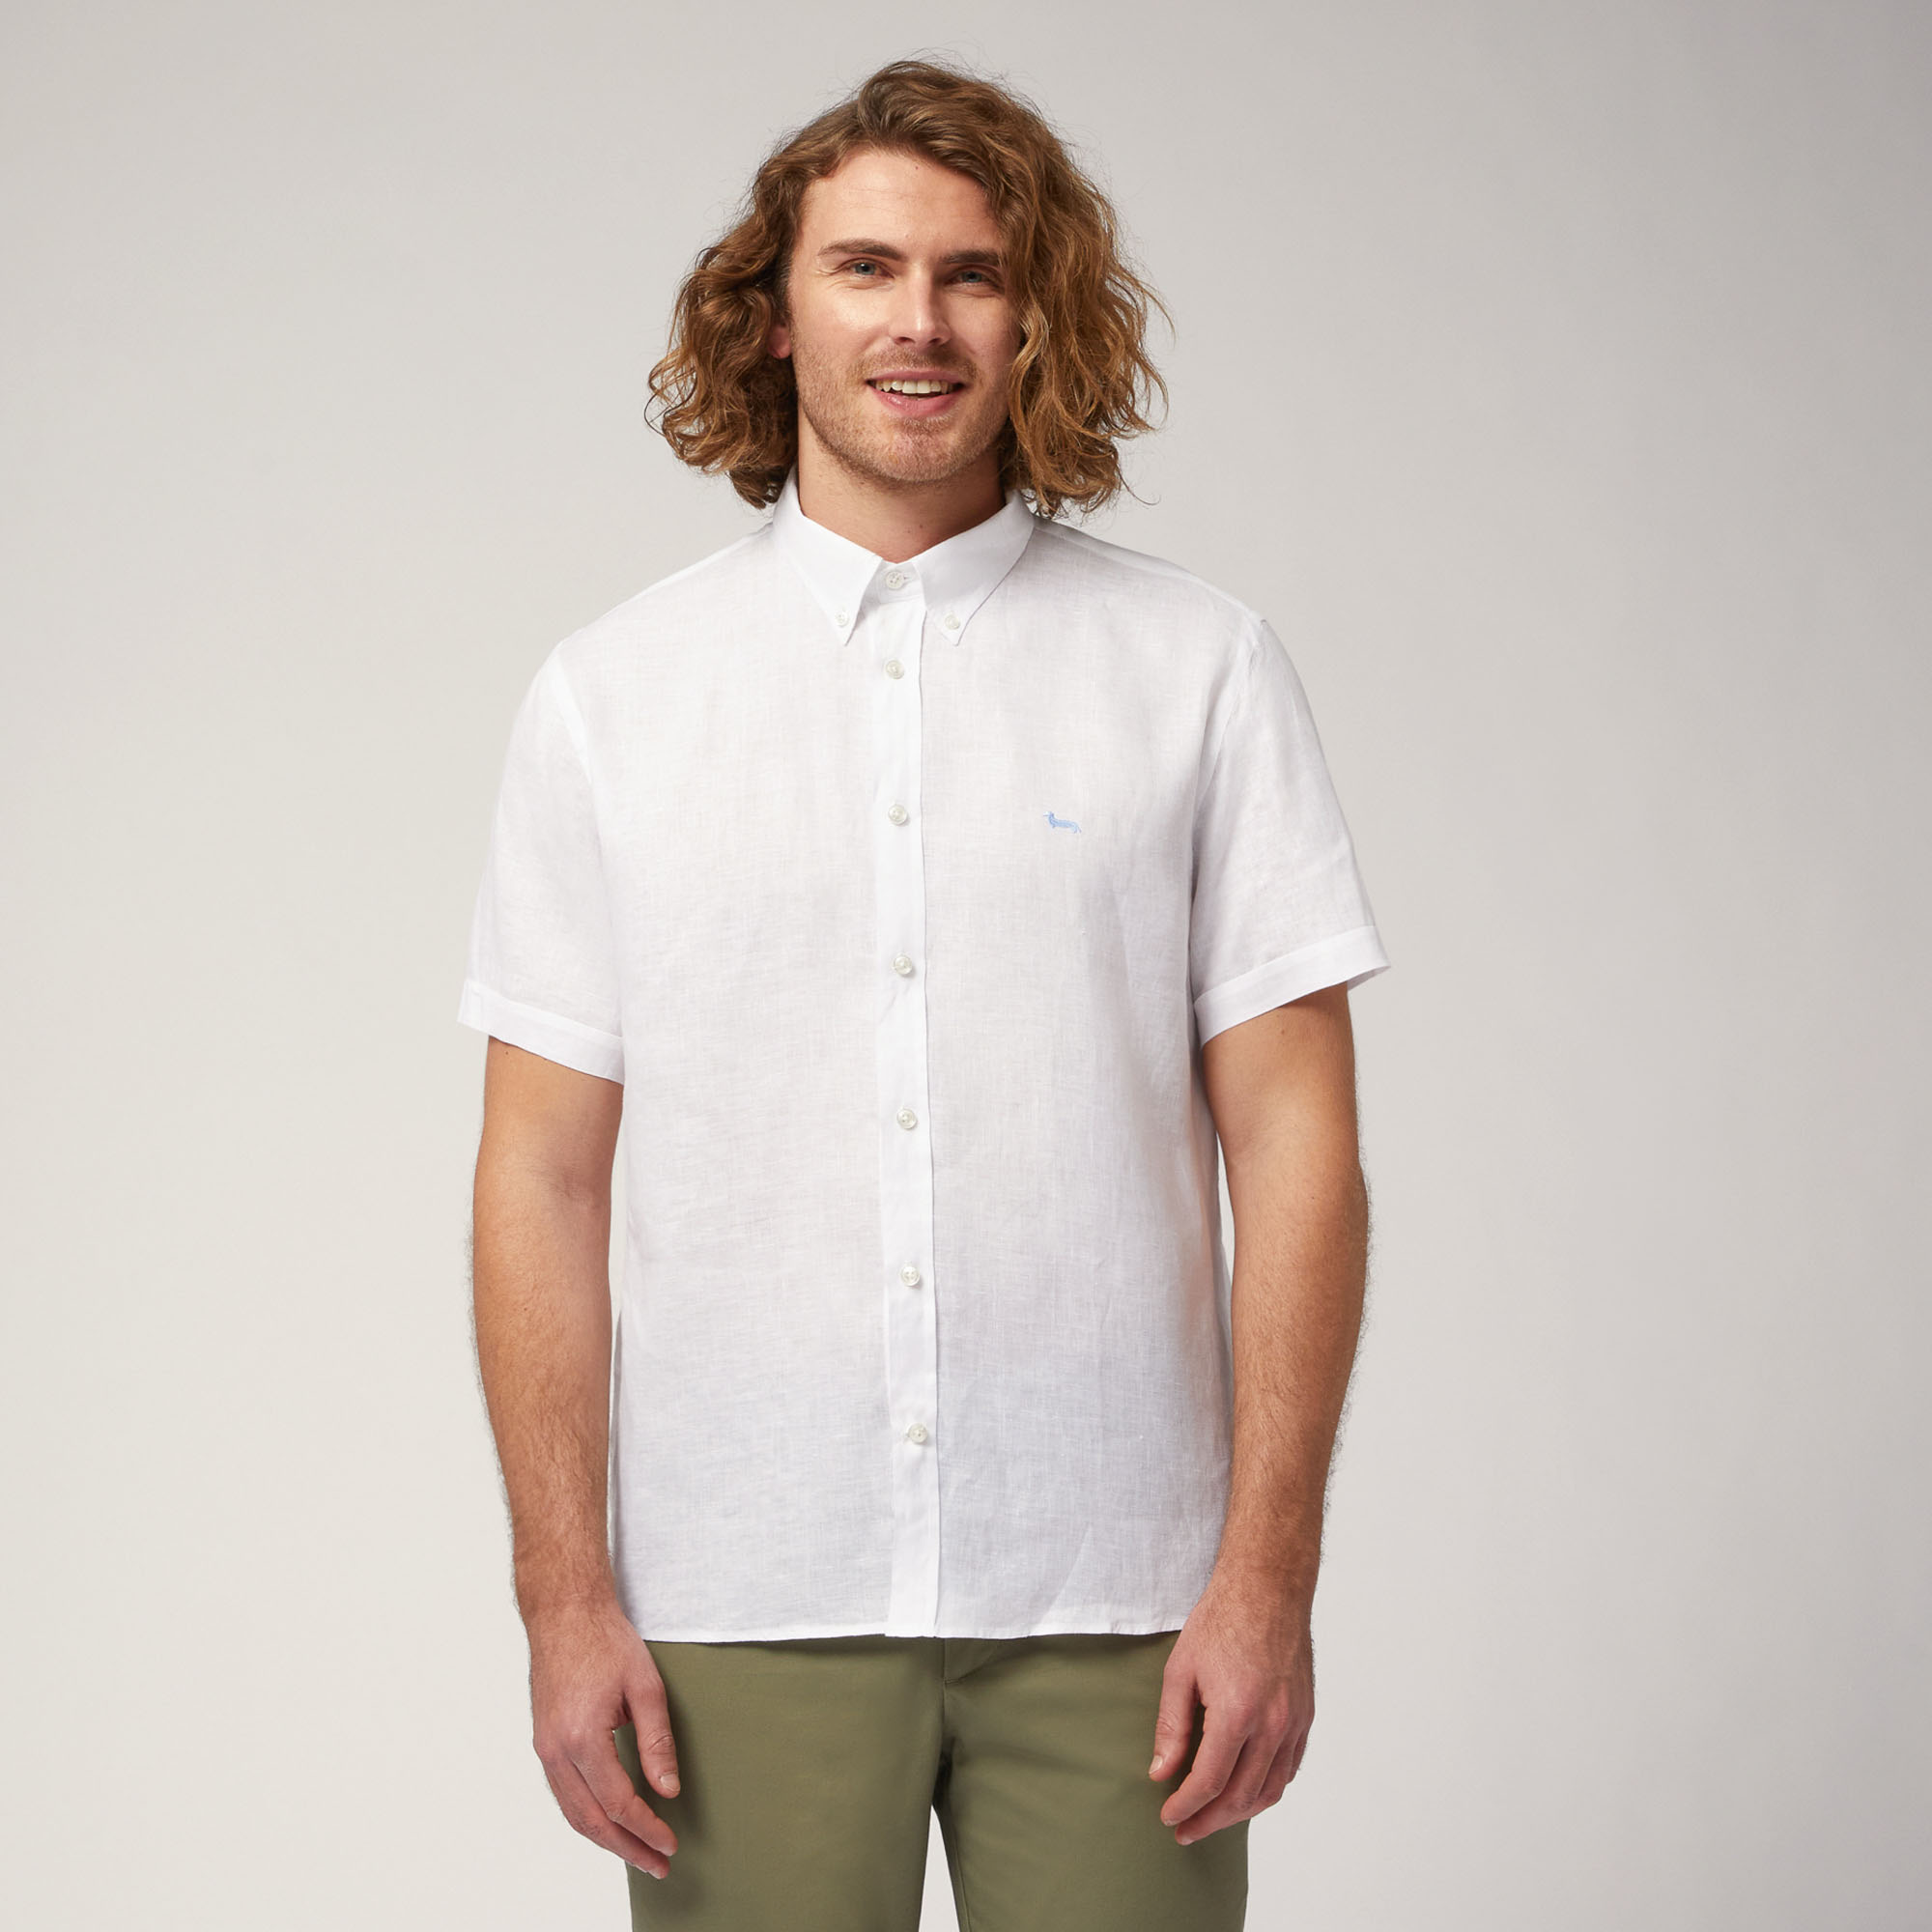 Linen Short-Sleeved Shirt, White, large